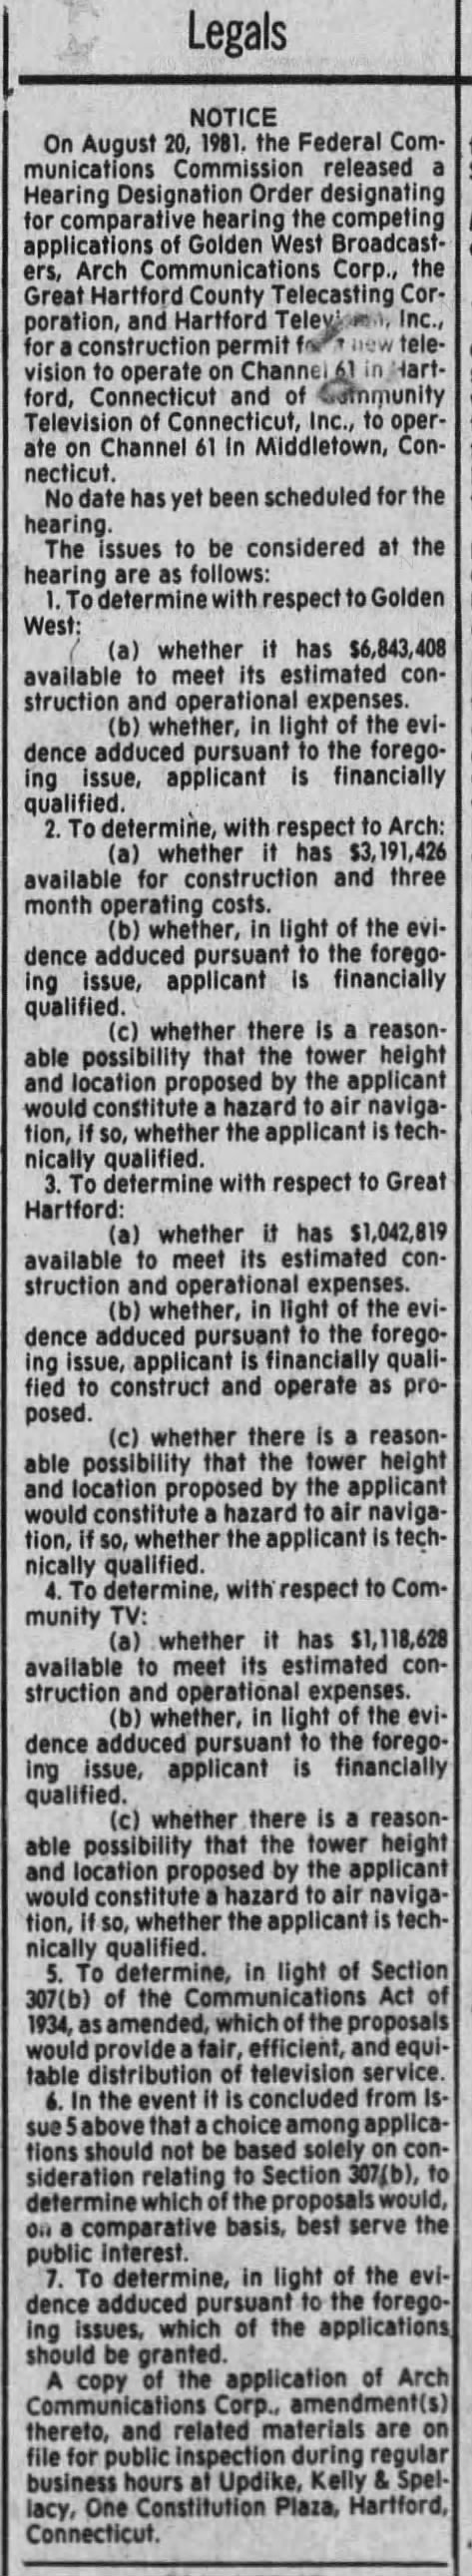 Hartford 61 hearing designation order